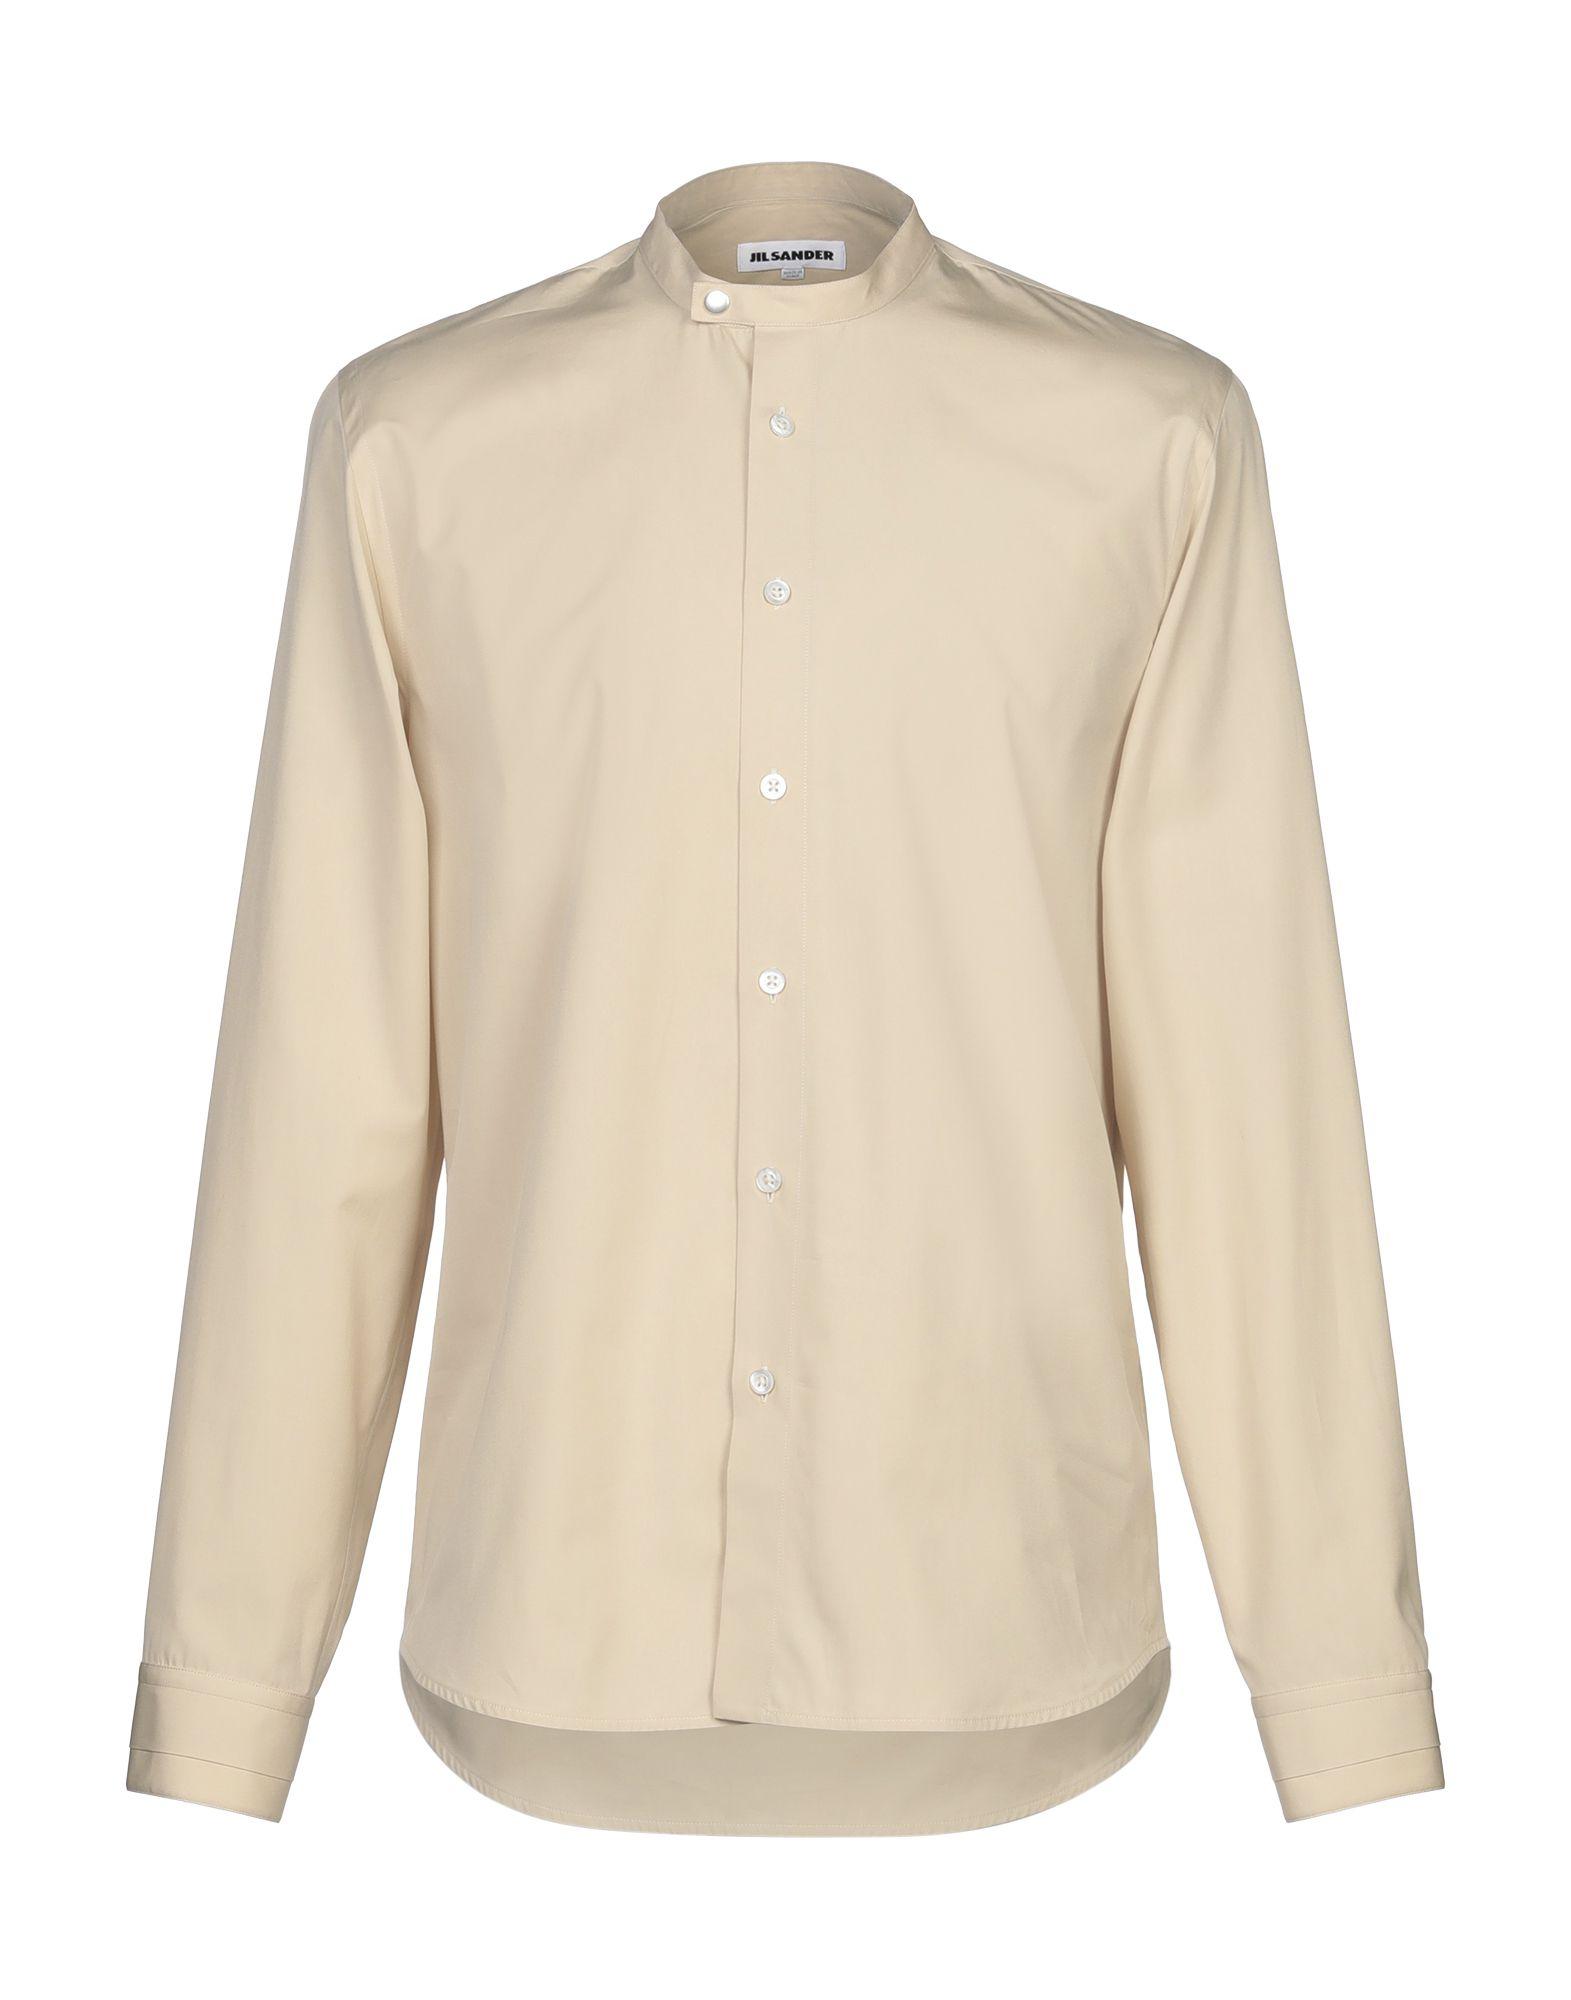 Jil Sander Cotton Shirt in Beige (Natural) for Men - Lyst